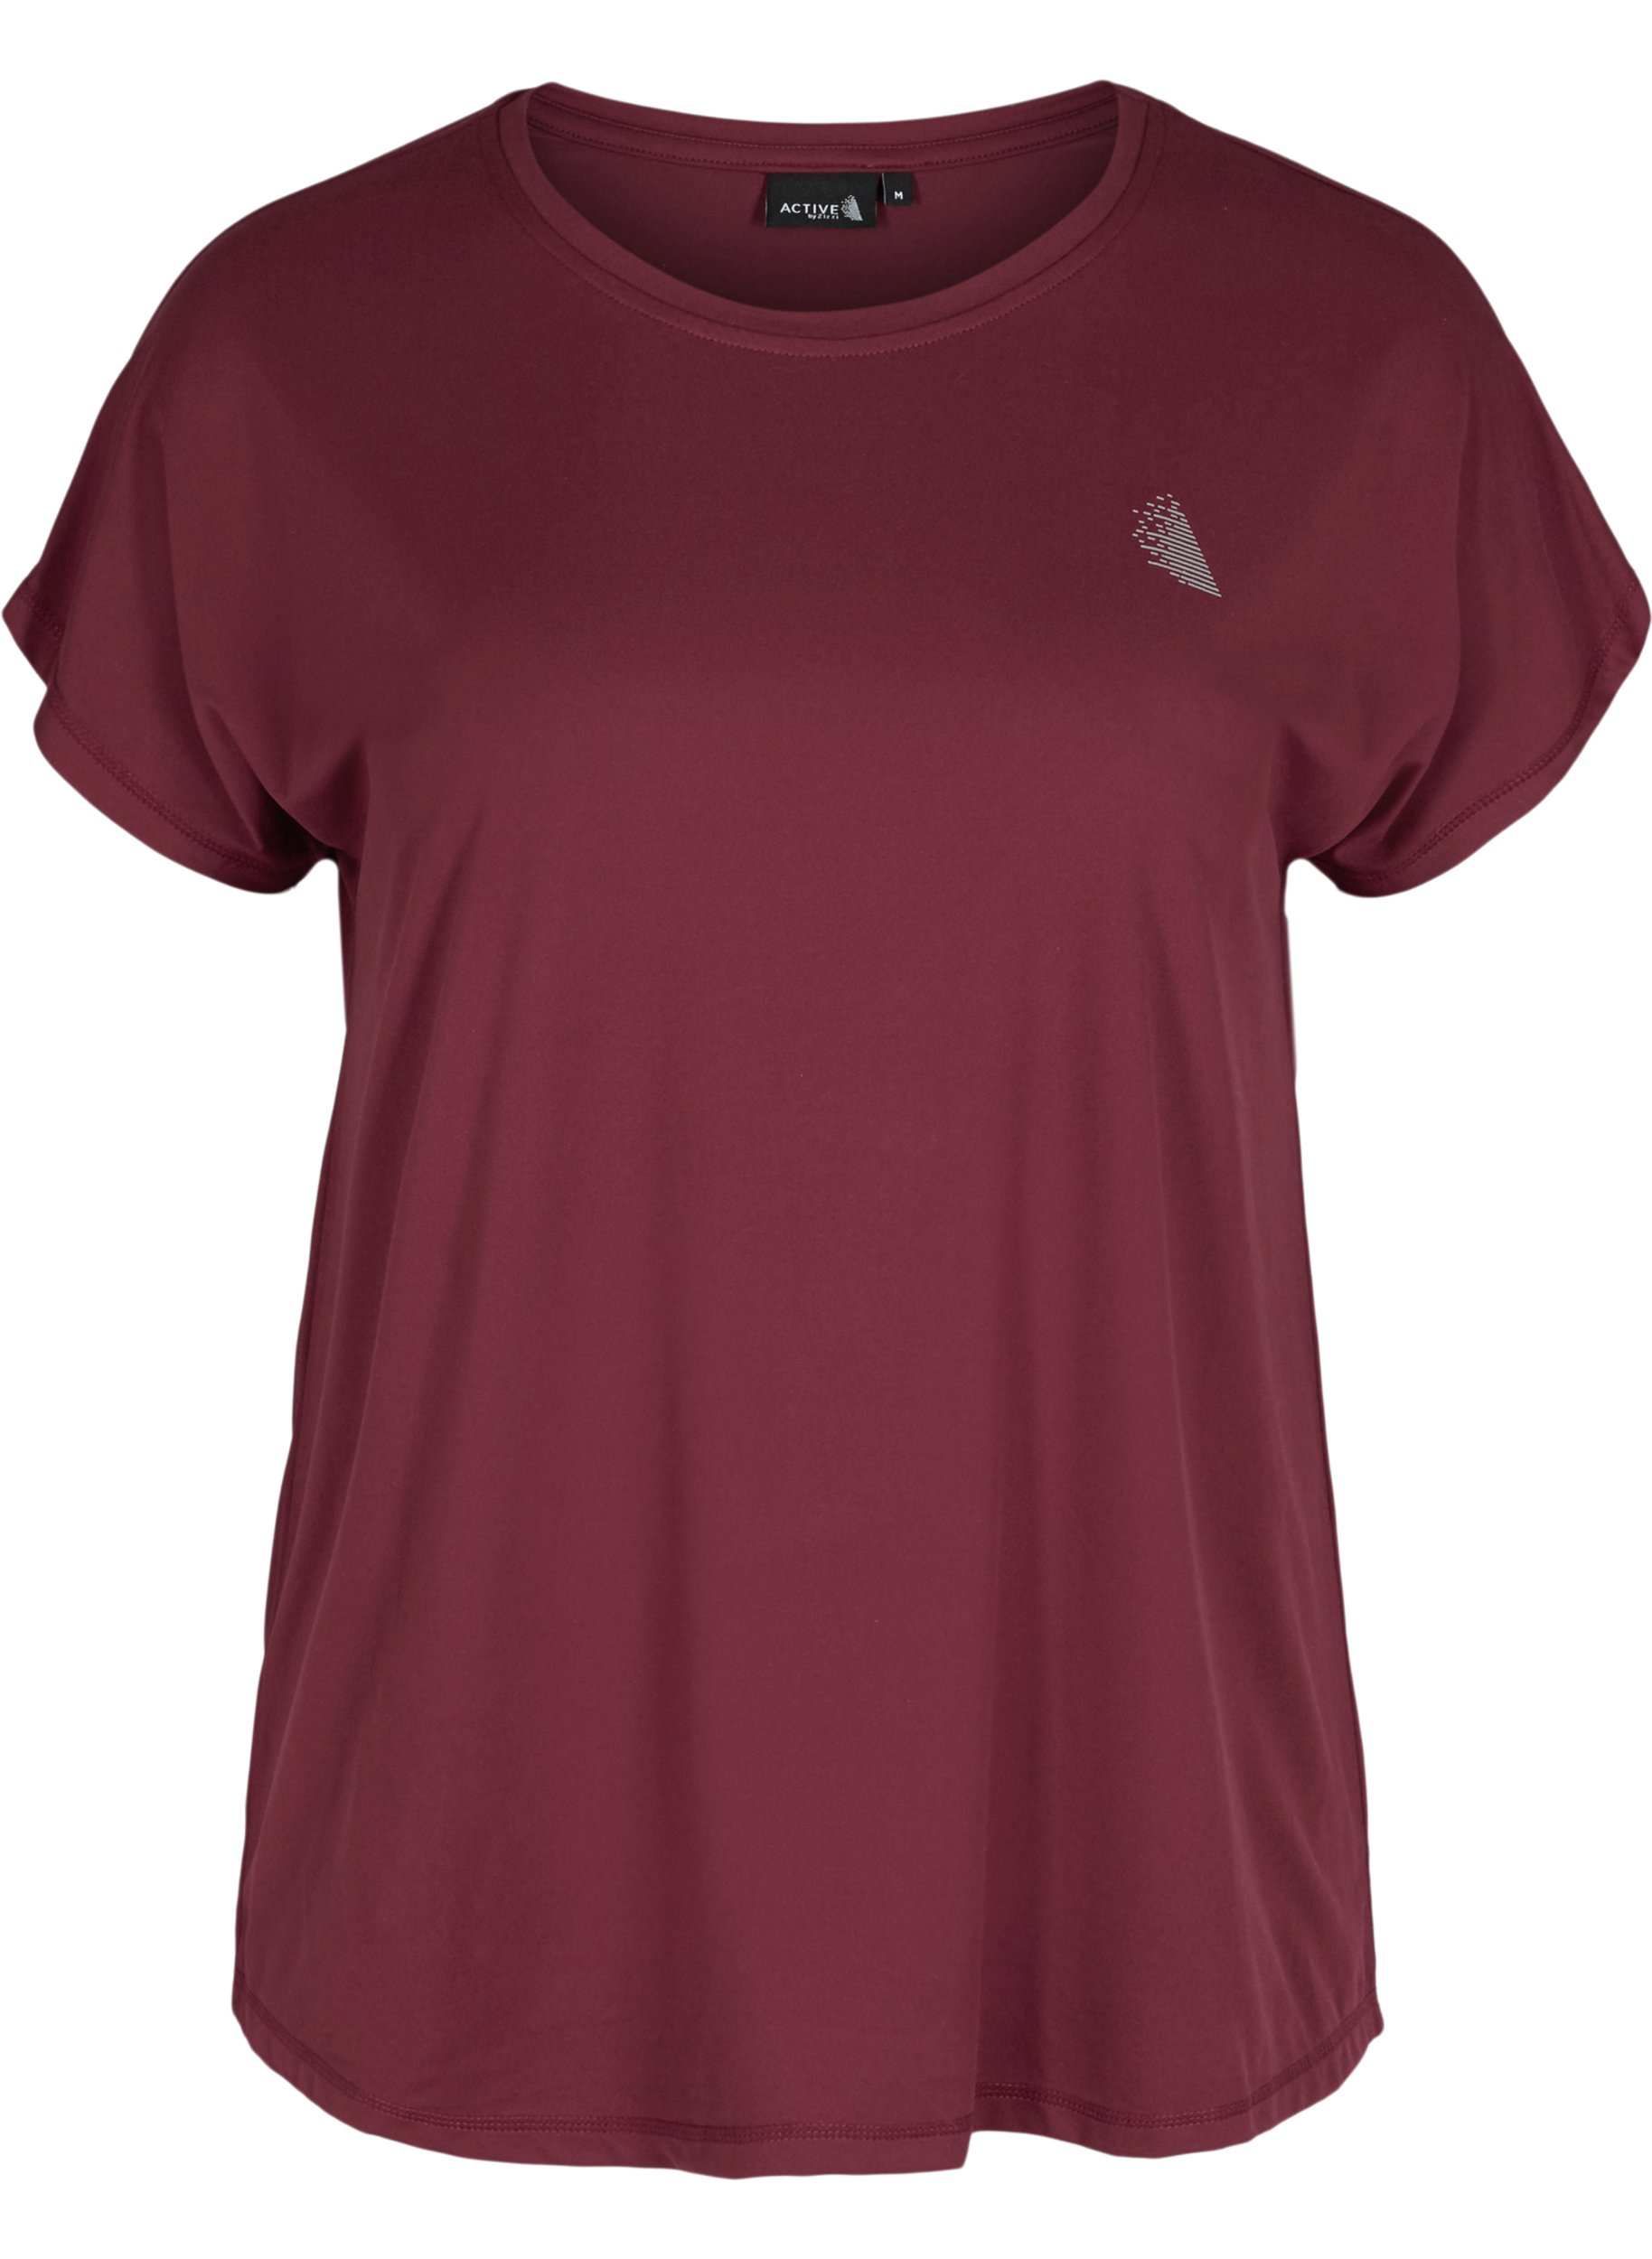 Ensfarget T-skjorte til trening, Pomegranate